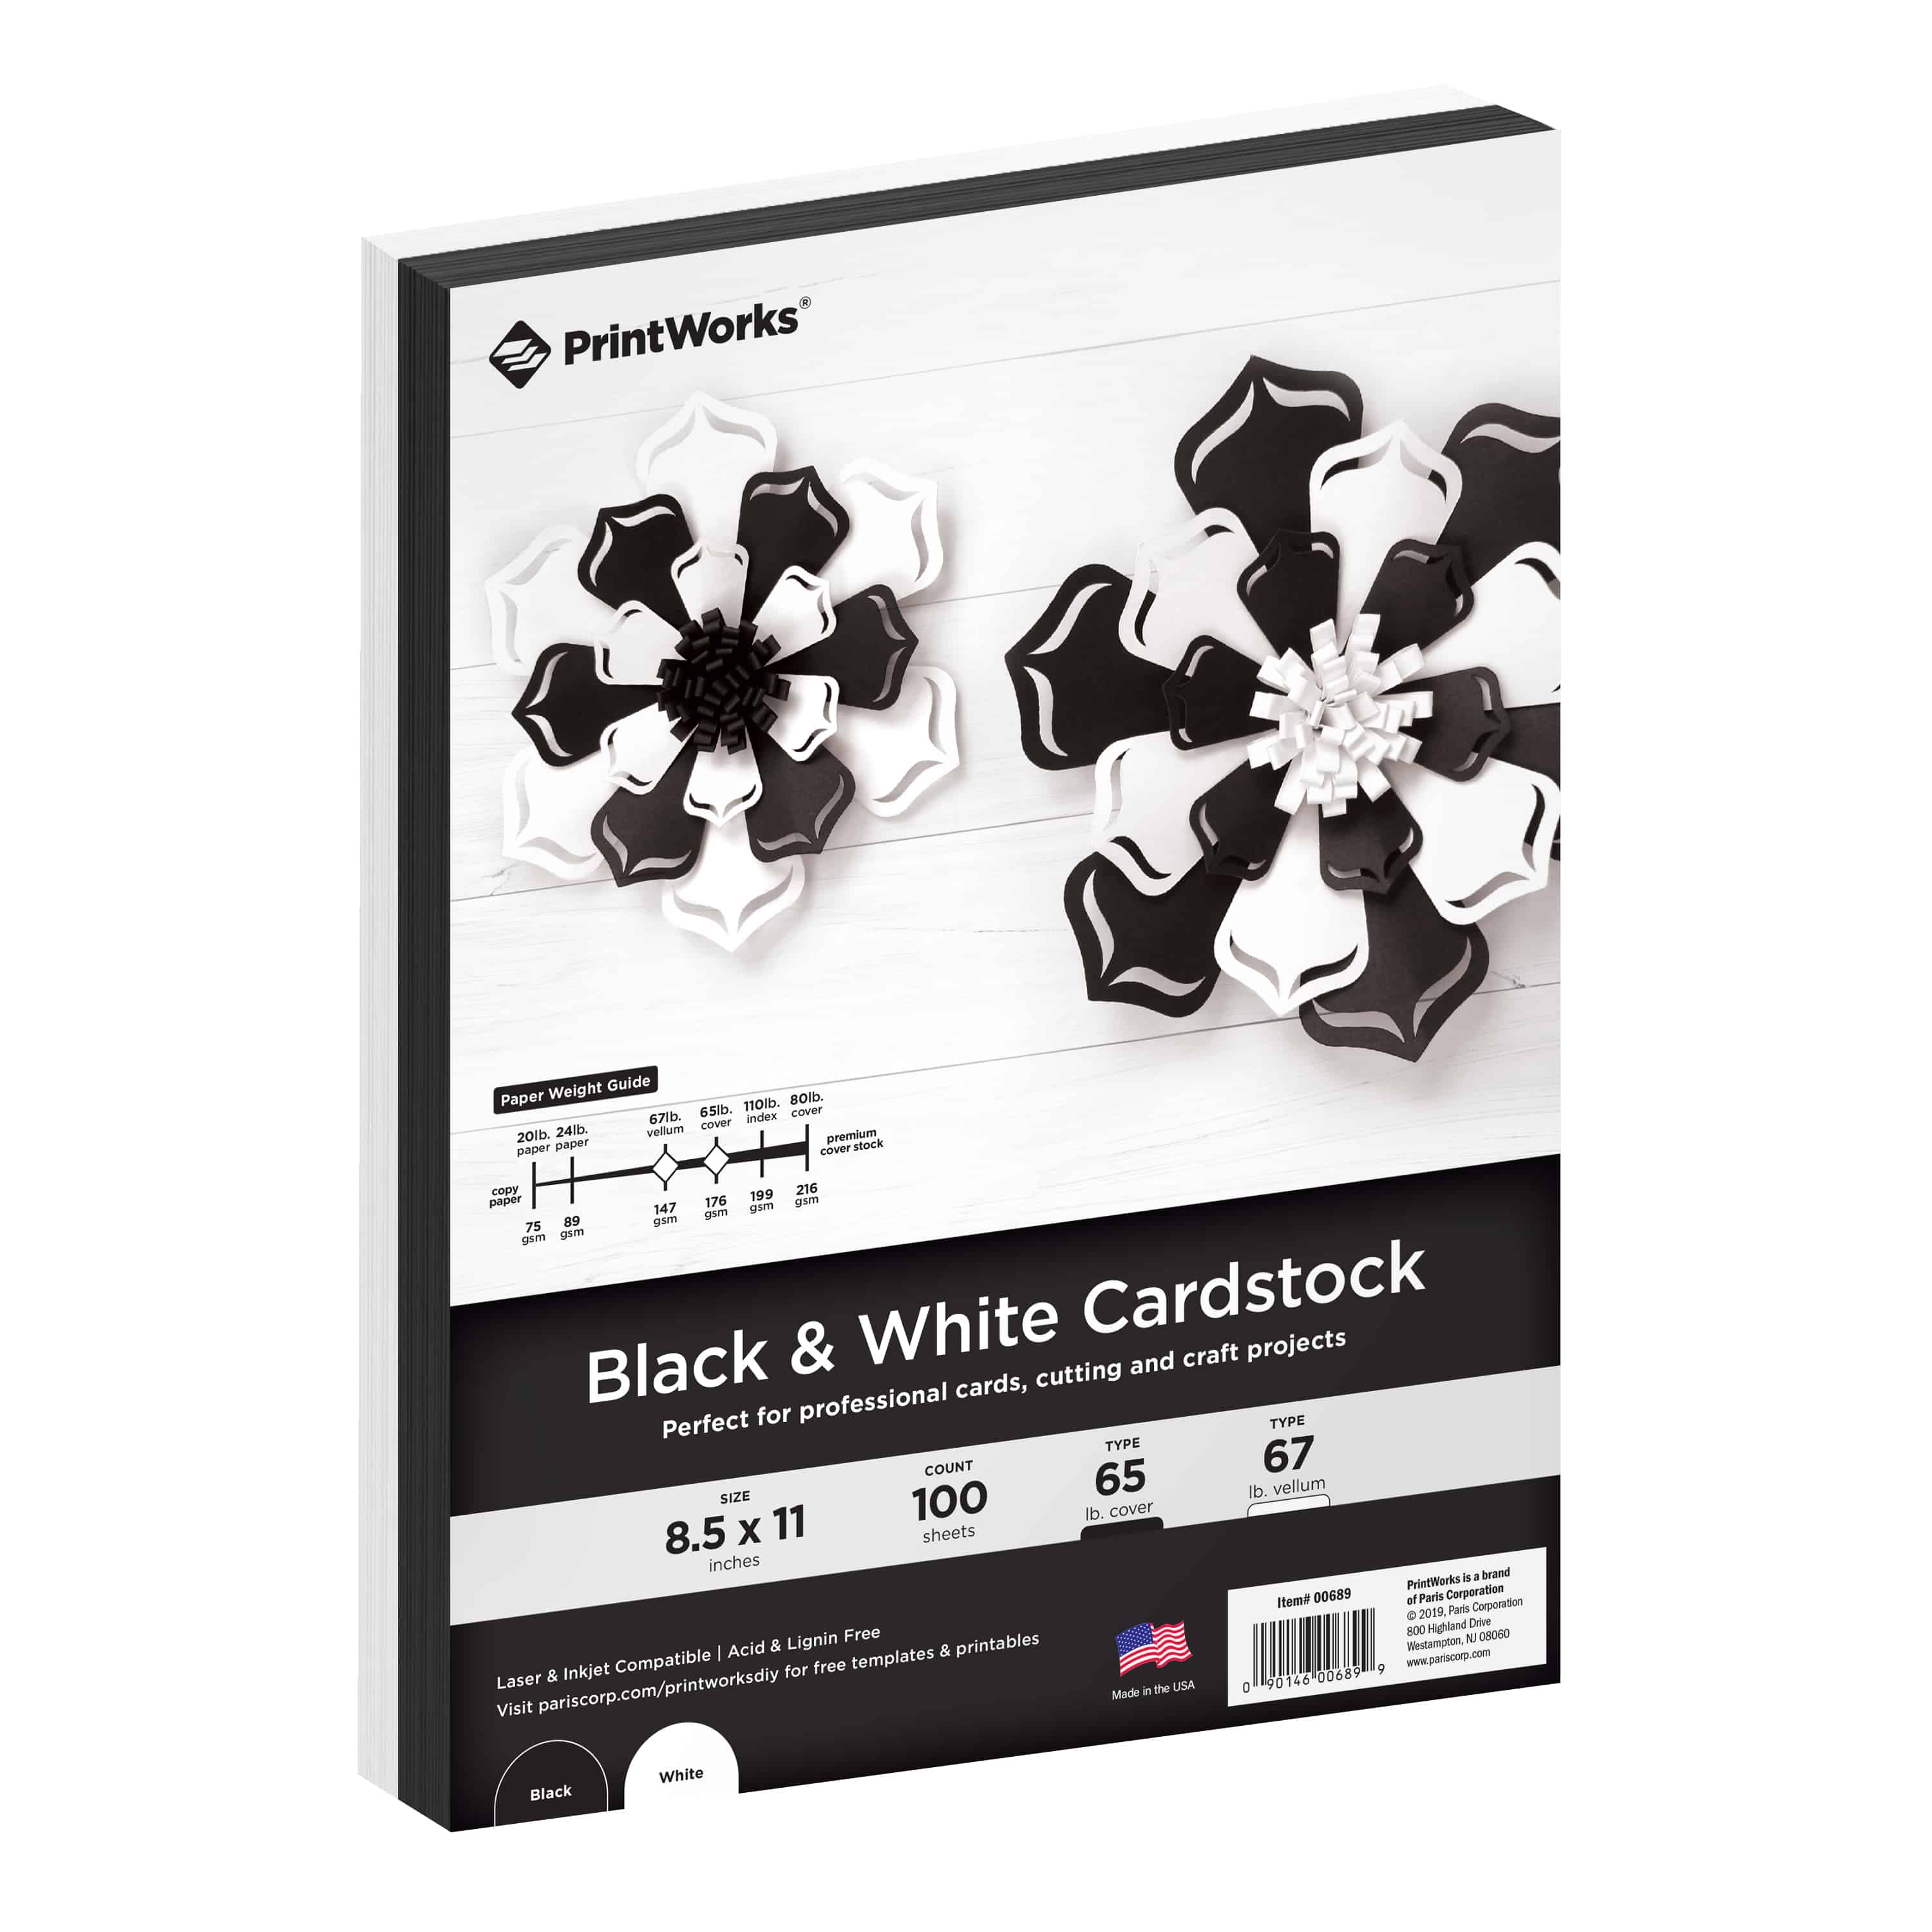 Black Cardstock, cardstock, card stock, white cardstock, white card stock, premium cardstock, heavyweight cardstock, white paper, black paper, paper crafts